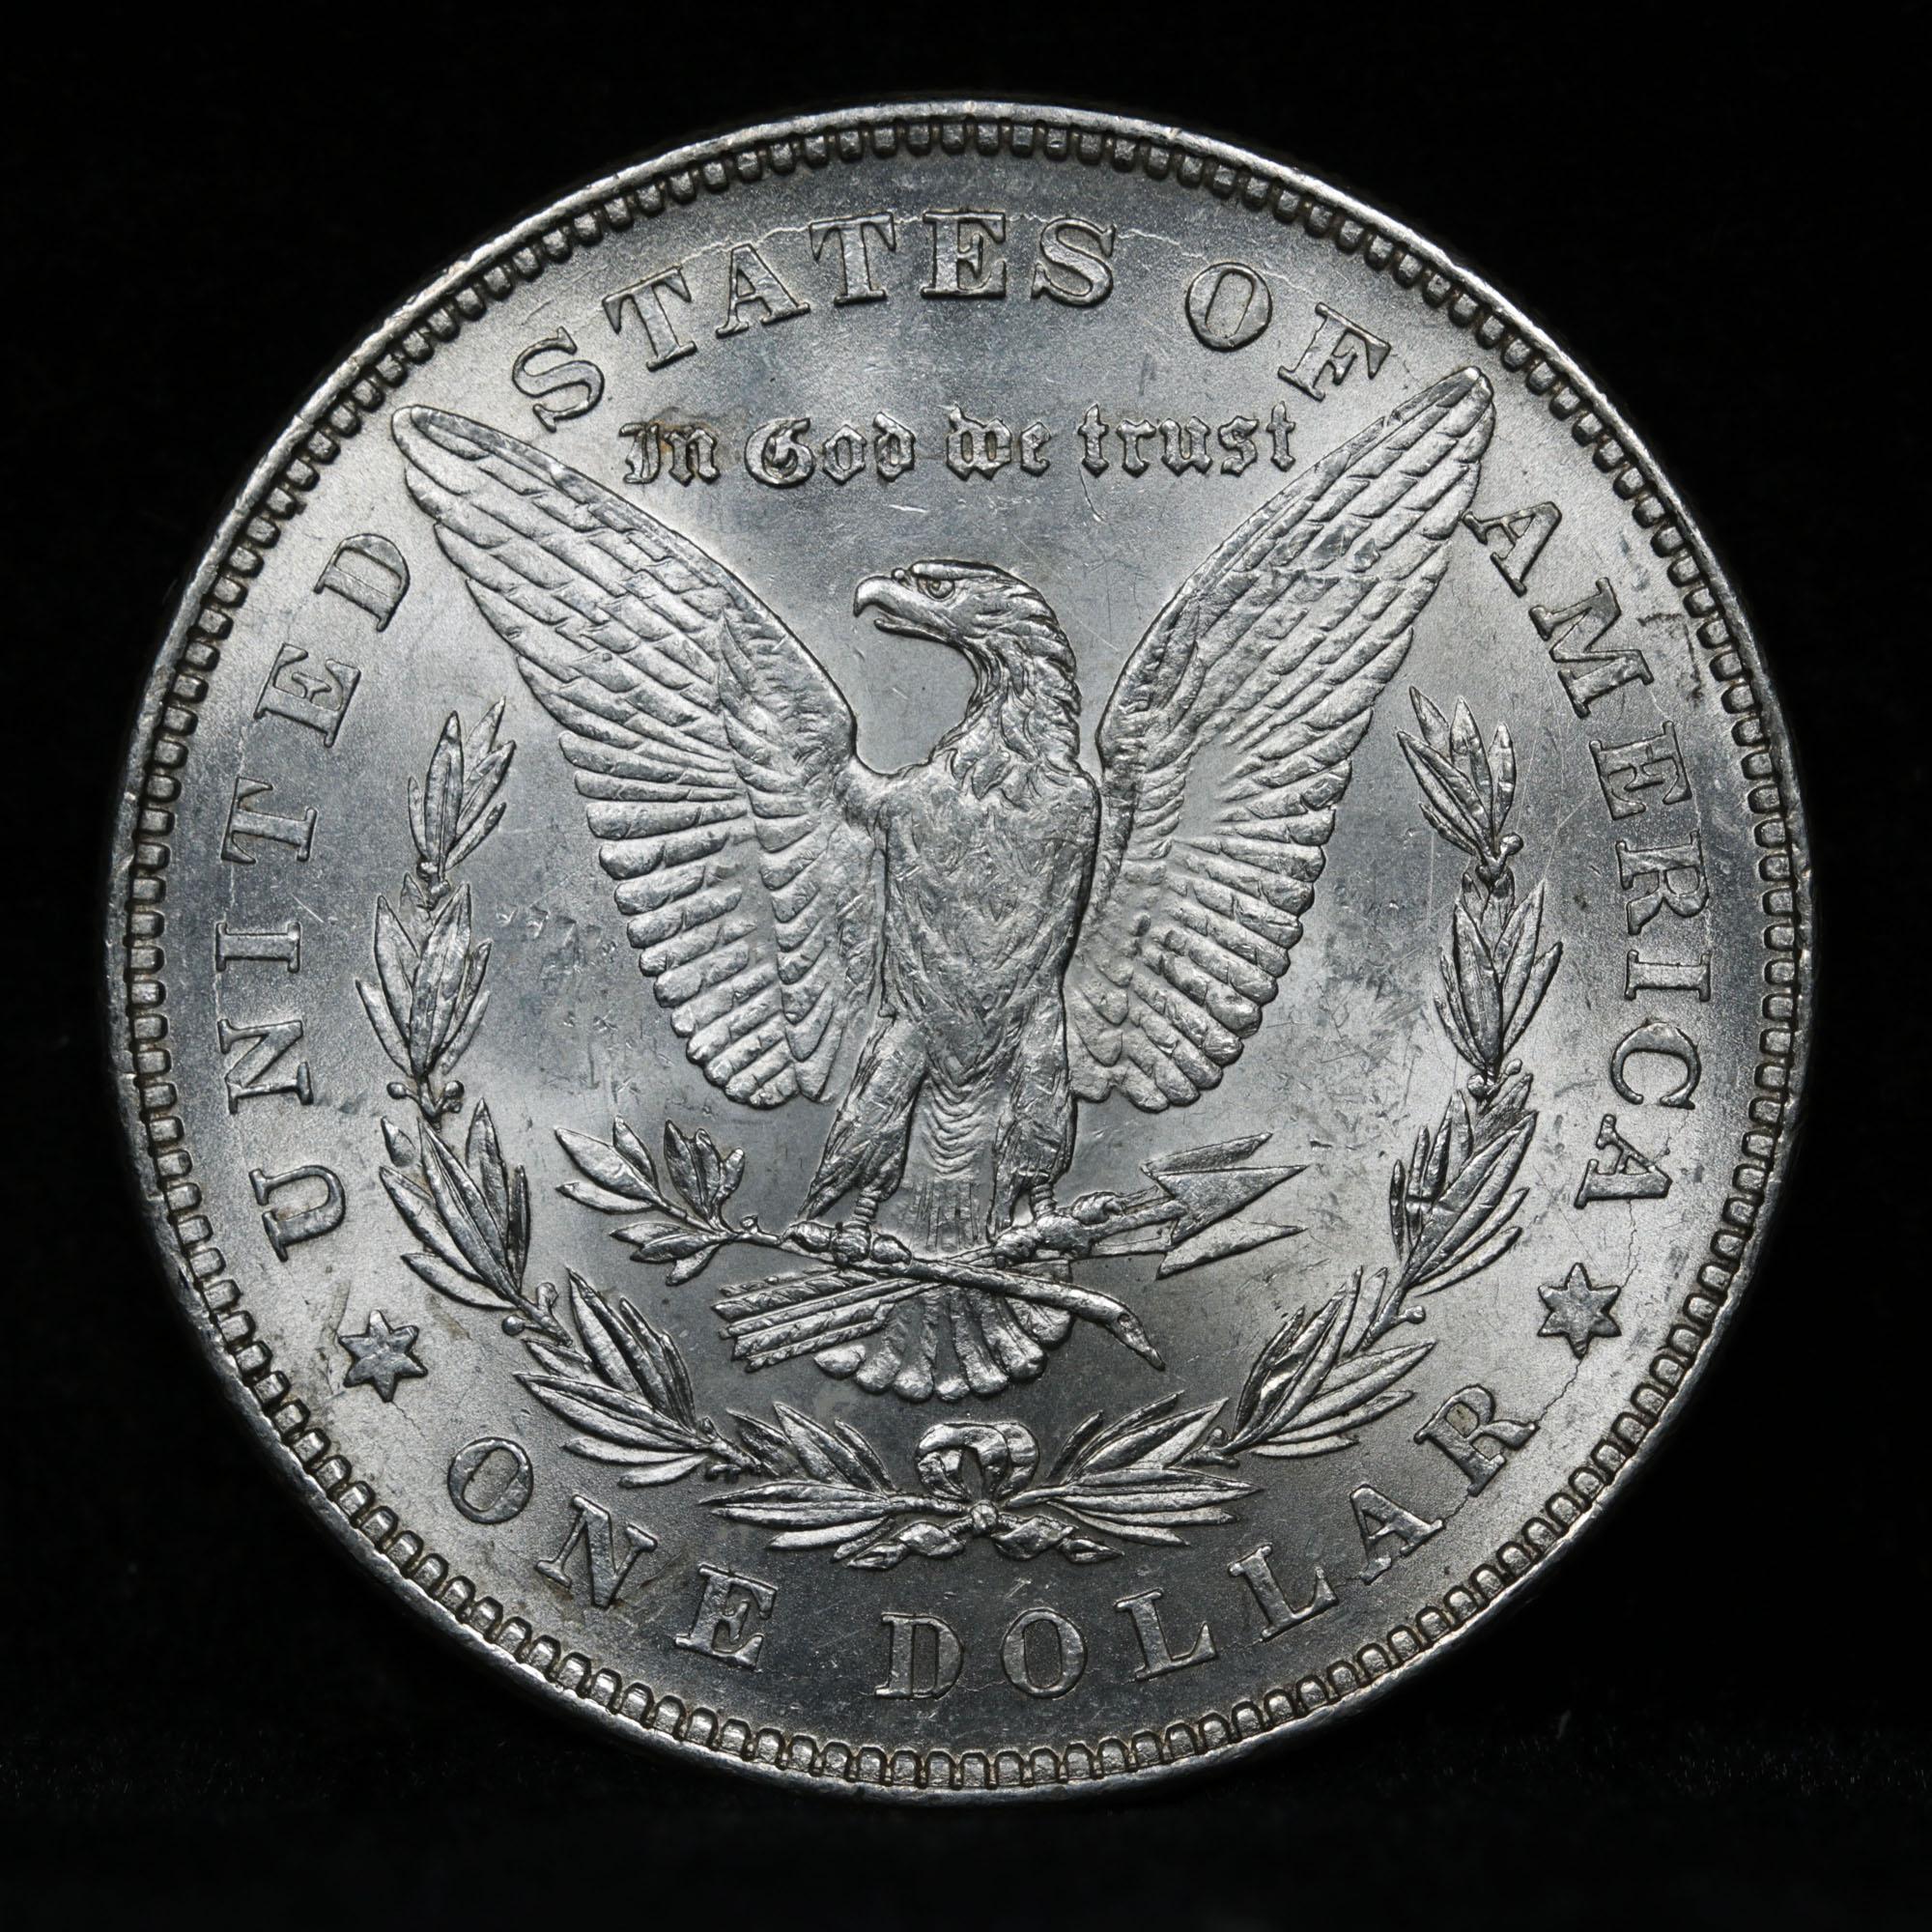 1878-p 7tf Vam 84A, Super CD Morgan Dollar $1 Grades Choice Unc (fc)